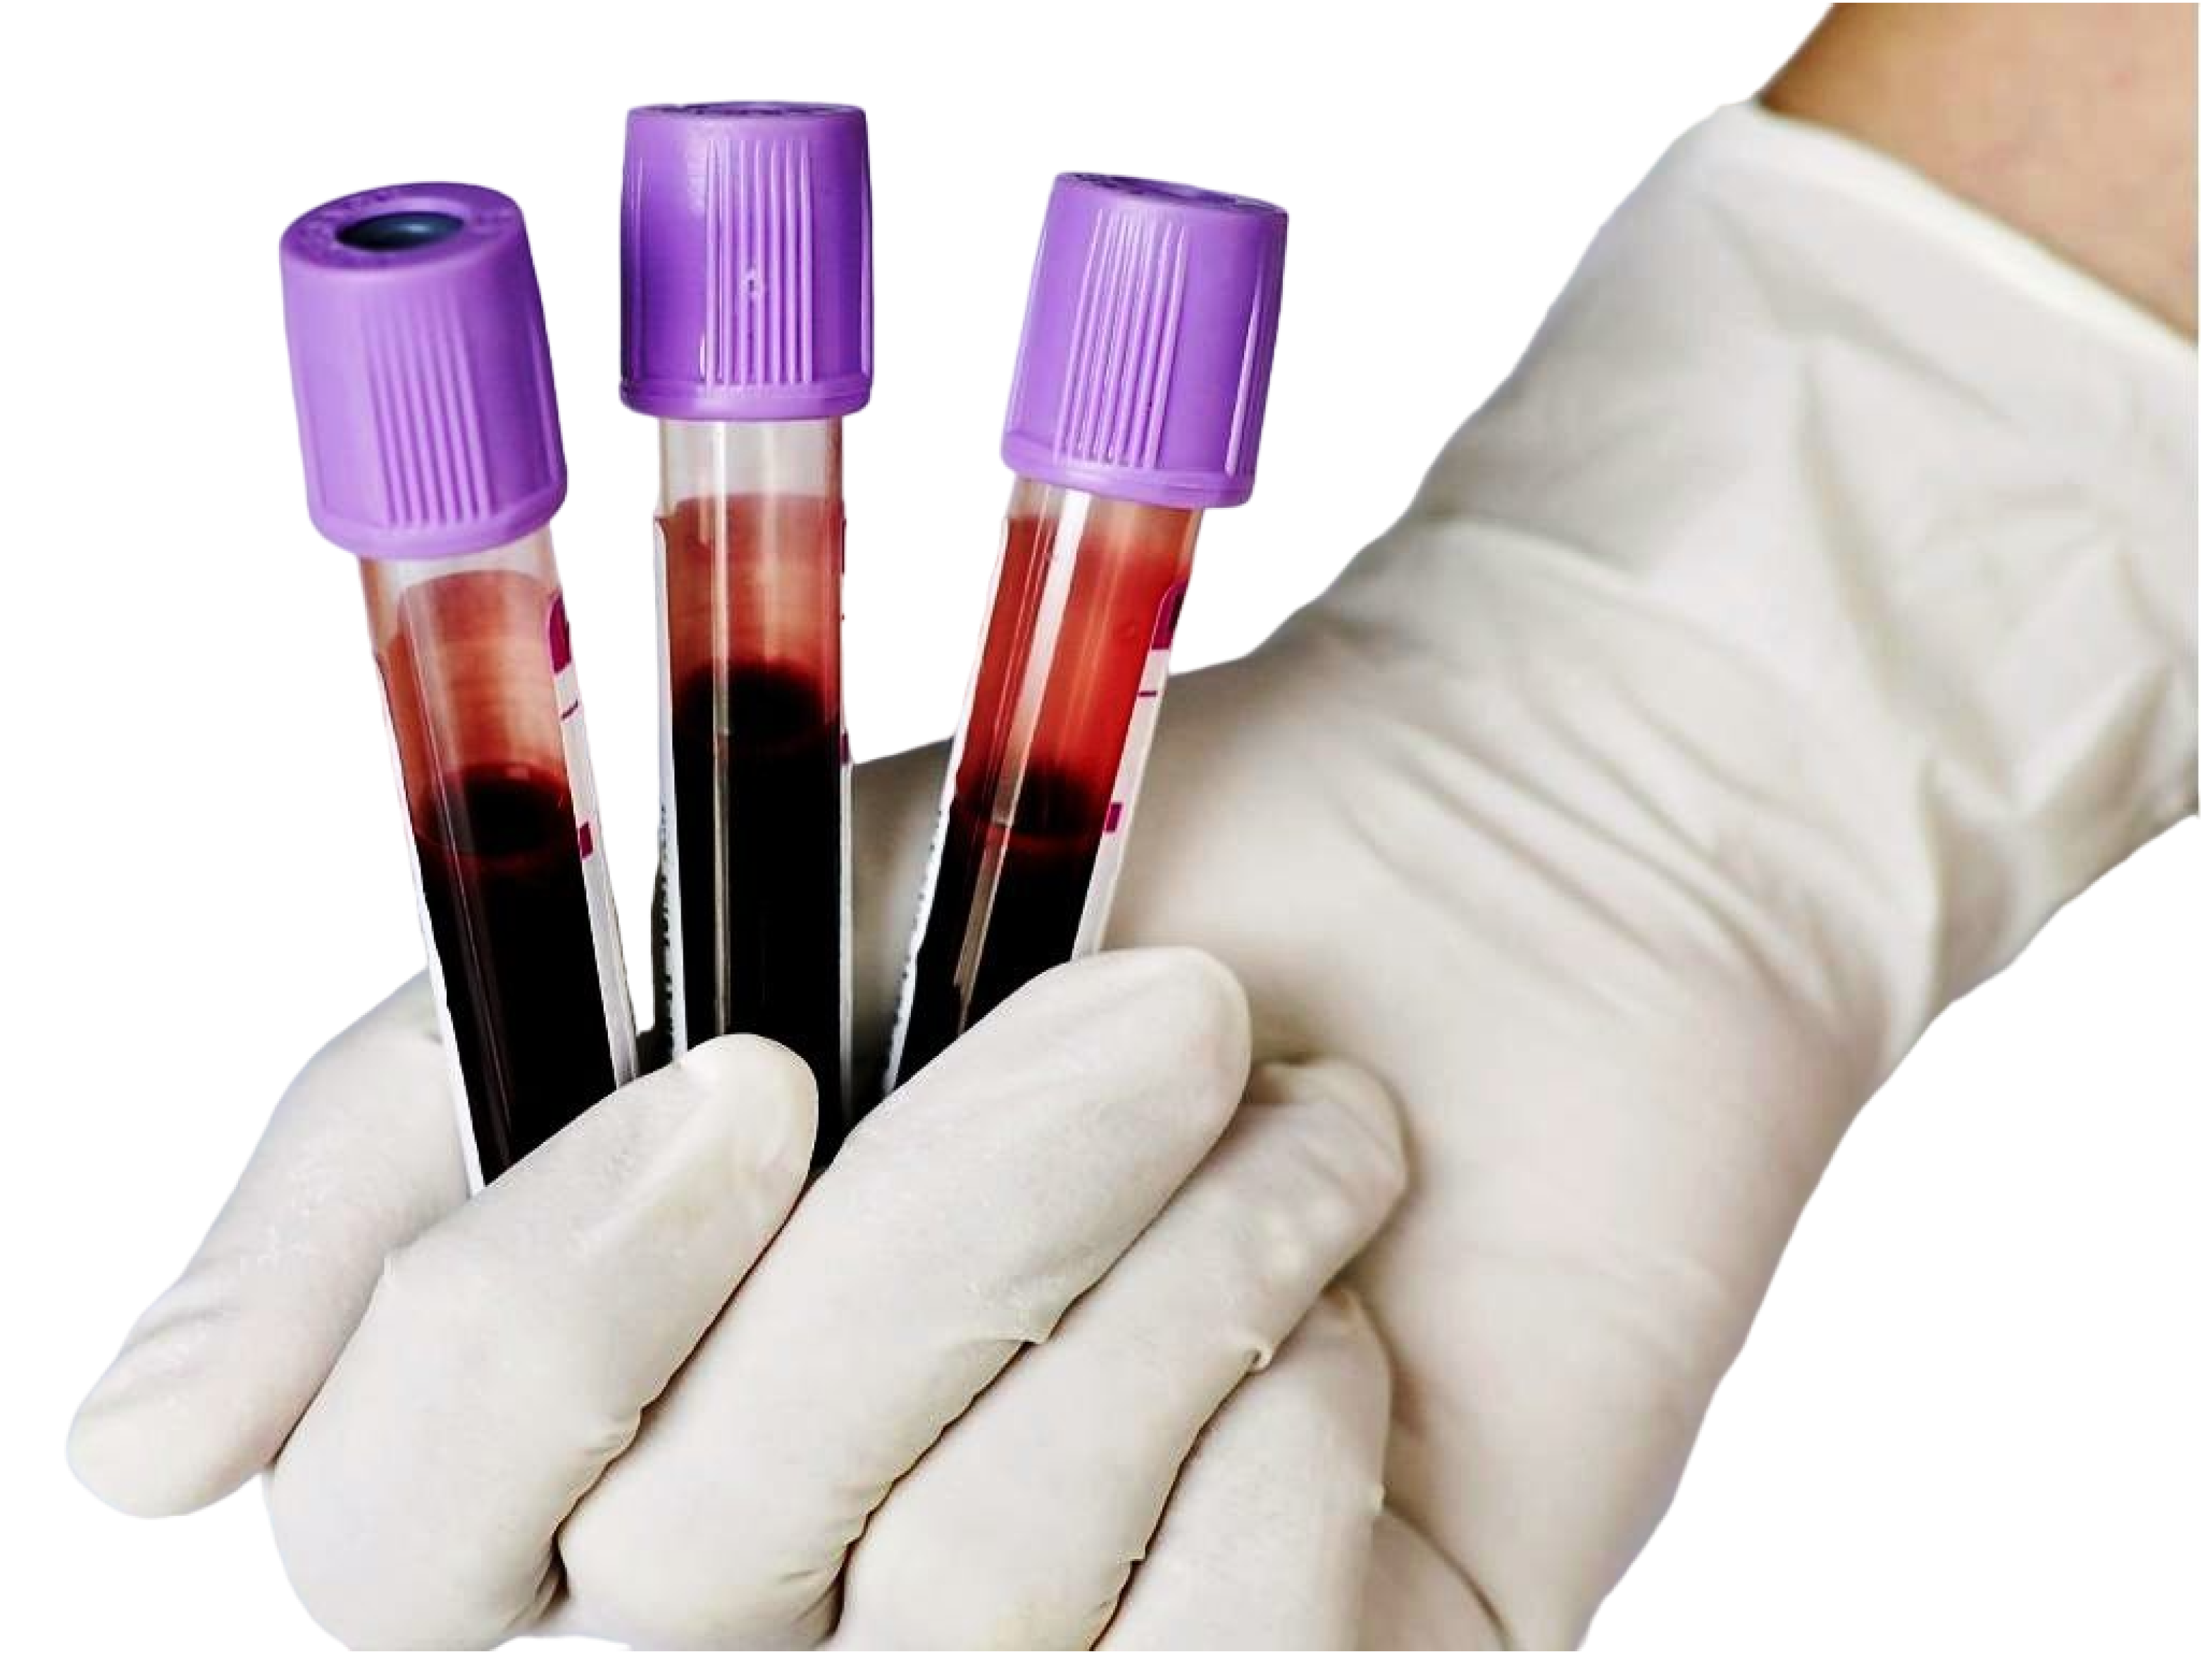 Анализы биологических жидкостей. Пробирка для исследования ОАК. Пробирки с кровью. Взятие крови на исследование в пробирку. Забор биоматериала для исследования.